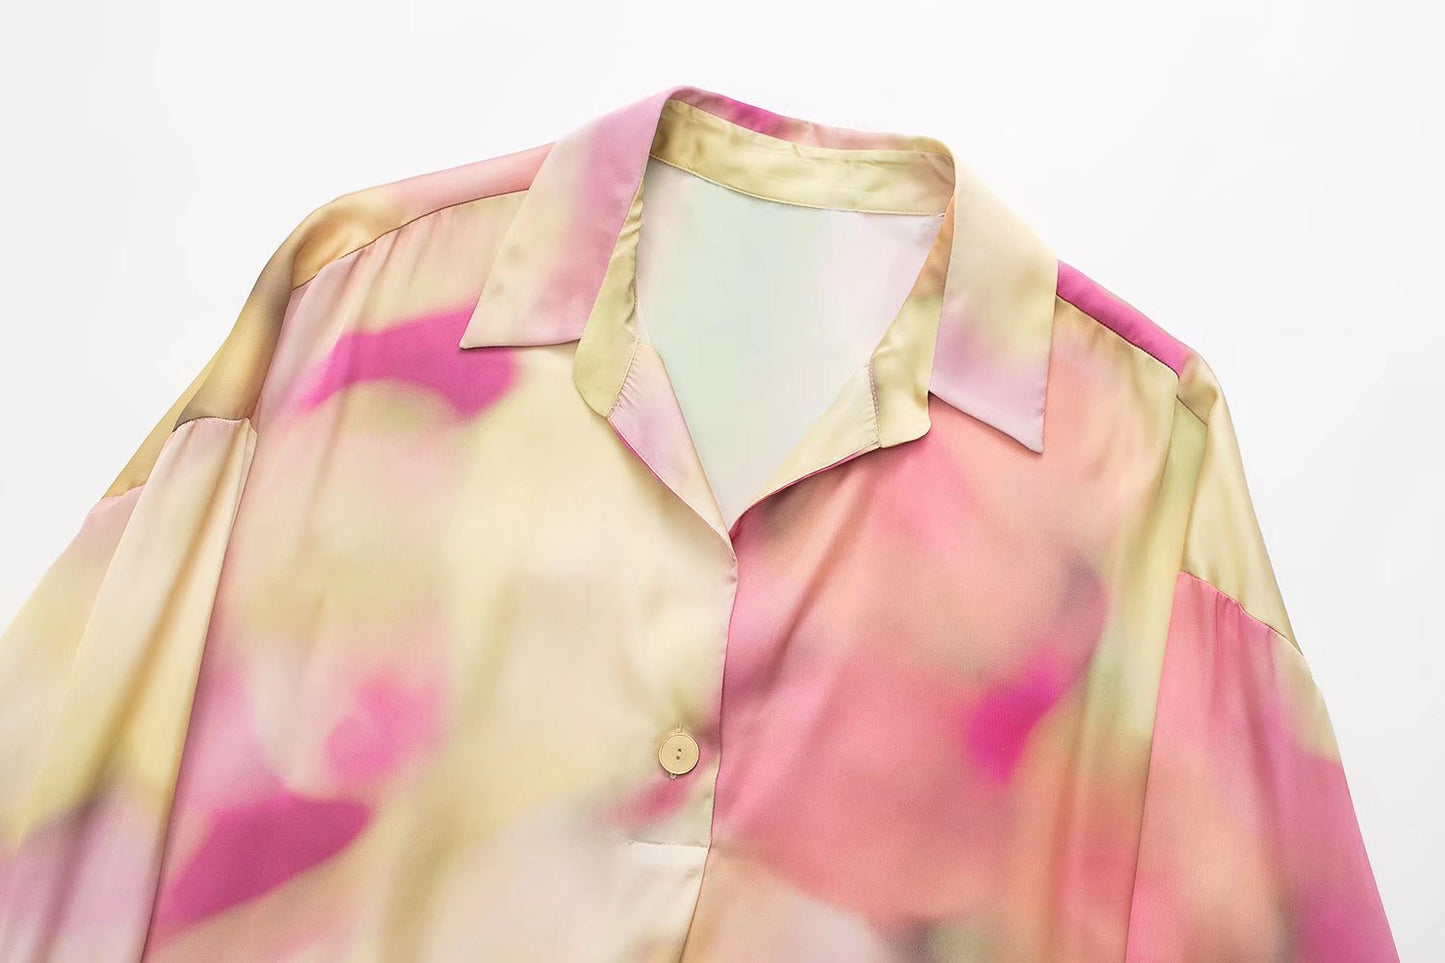 Women's Fashion Silk Satin Textured Shirt with Tie-Dye Design